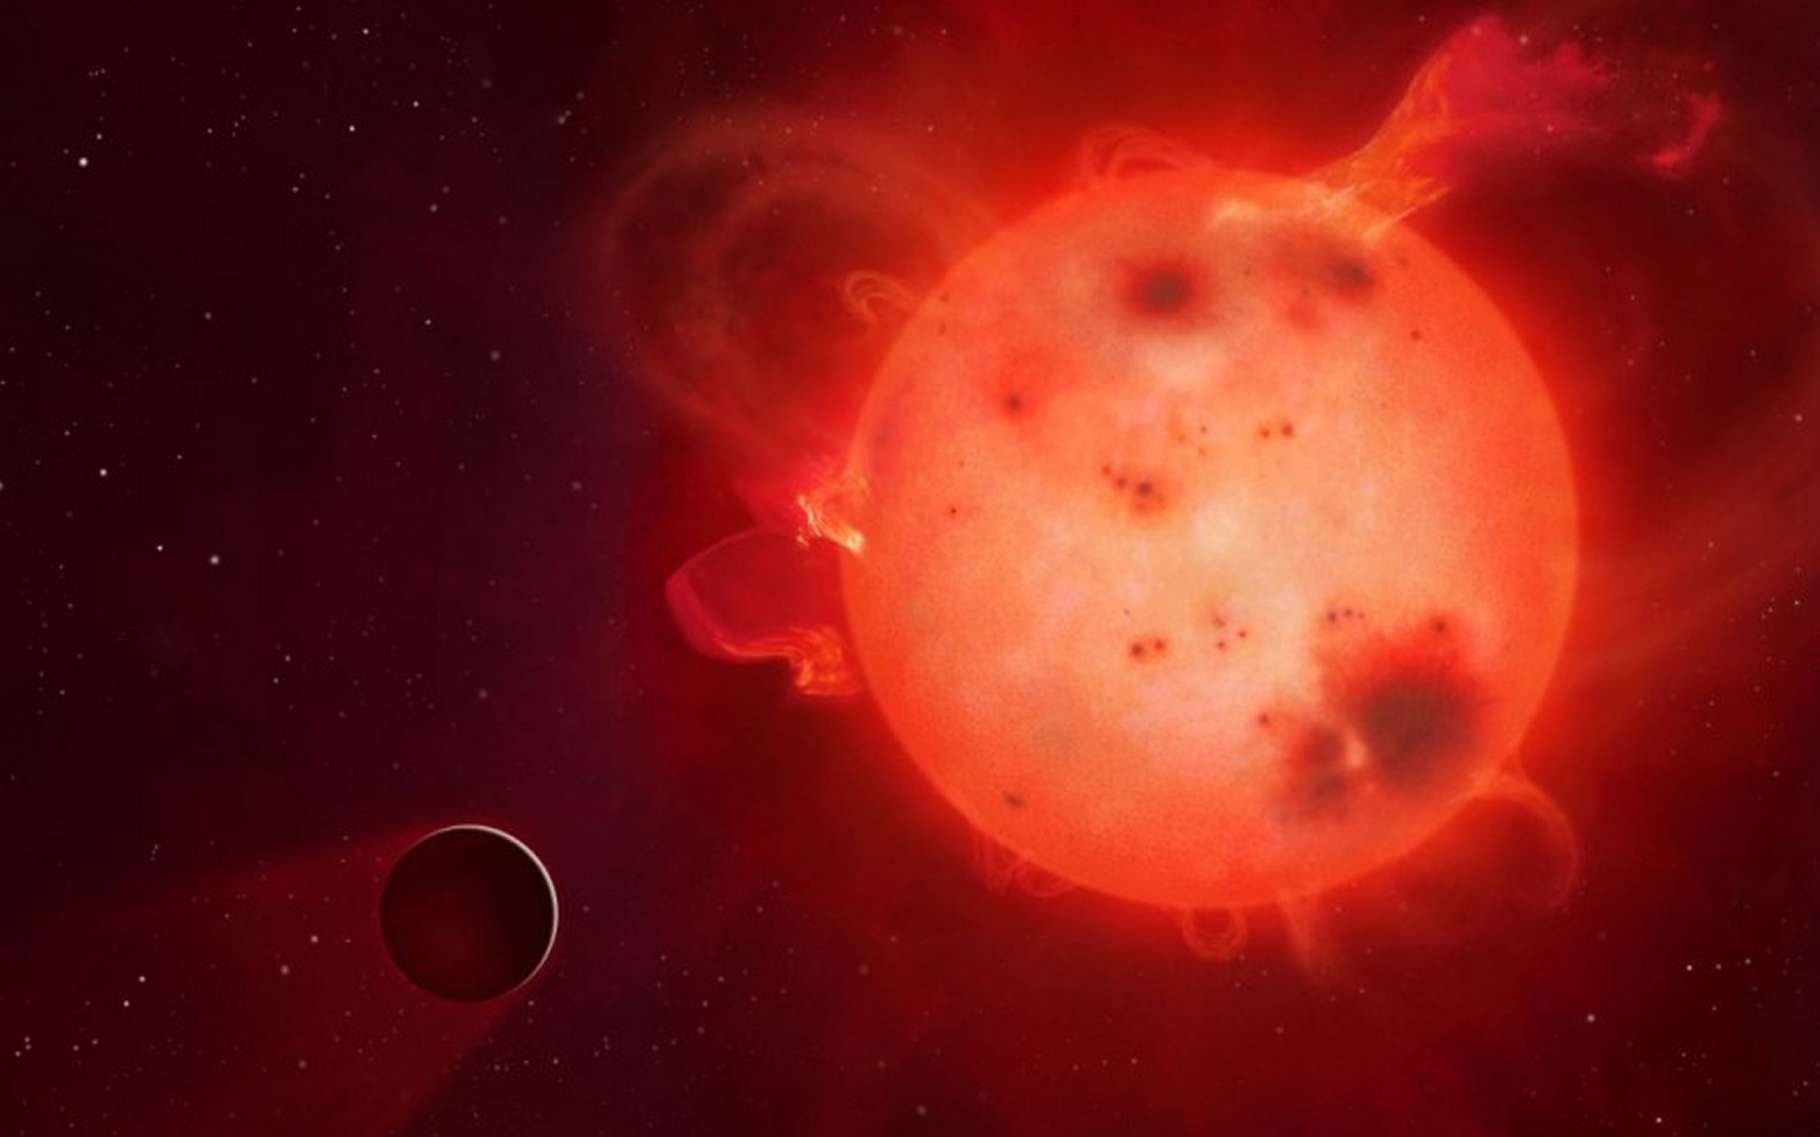 L'exoplanète Kepler-438b (représentée ici dans une vue d'artiste) ressemble beaucoup à la Terre mais elle tourne, à faible distance, autour d'une naine rouge paraissant assez colérique. La vie est-elle possible tout près de ces petites étoiles, largement majoritaires ? Des modèles climatiques répondent oui, mais à certaines conditions. © Mark A. Garlick, university of Warwick